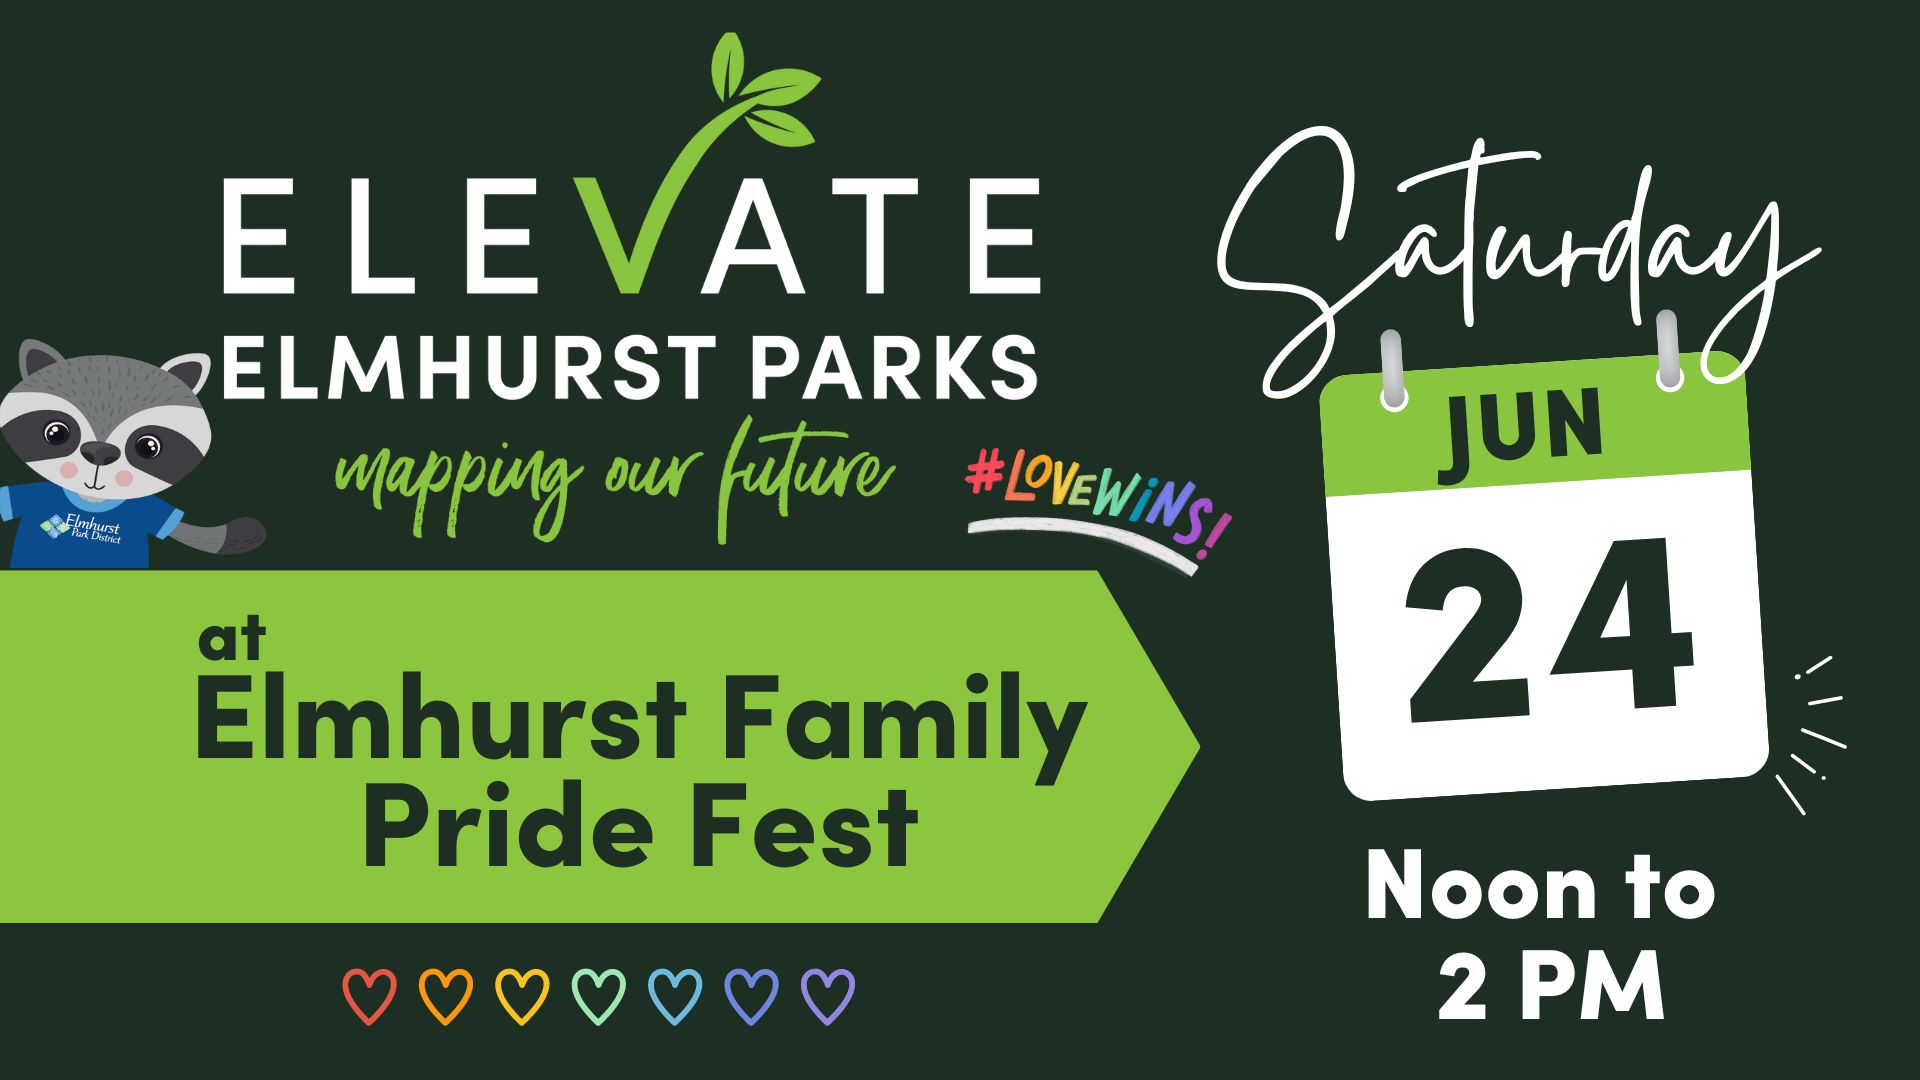 Elevate Elmhurst Parks at Elmhurst Family Pride Fest Elmhurst Park